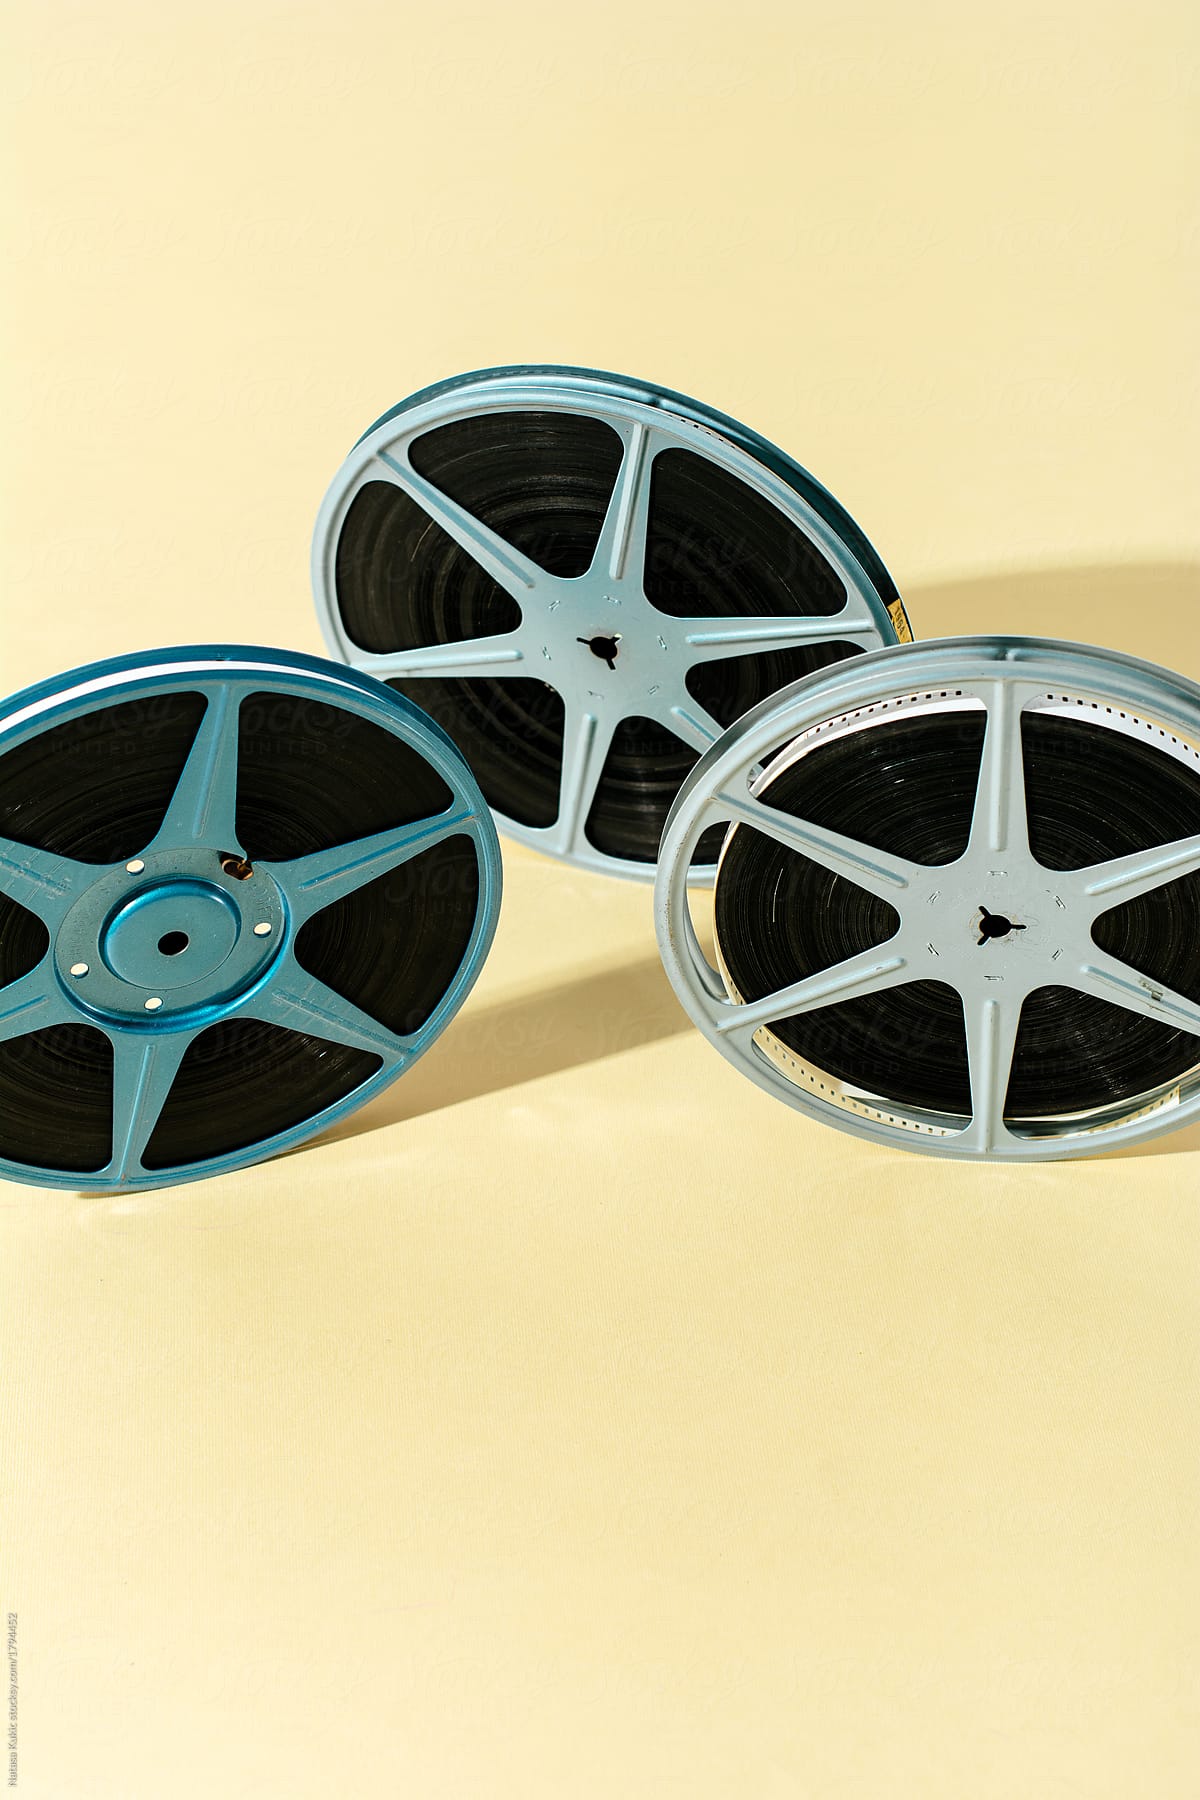 Vintage 8 mm tapes